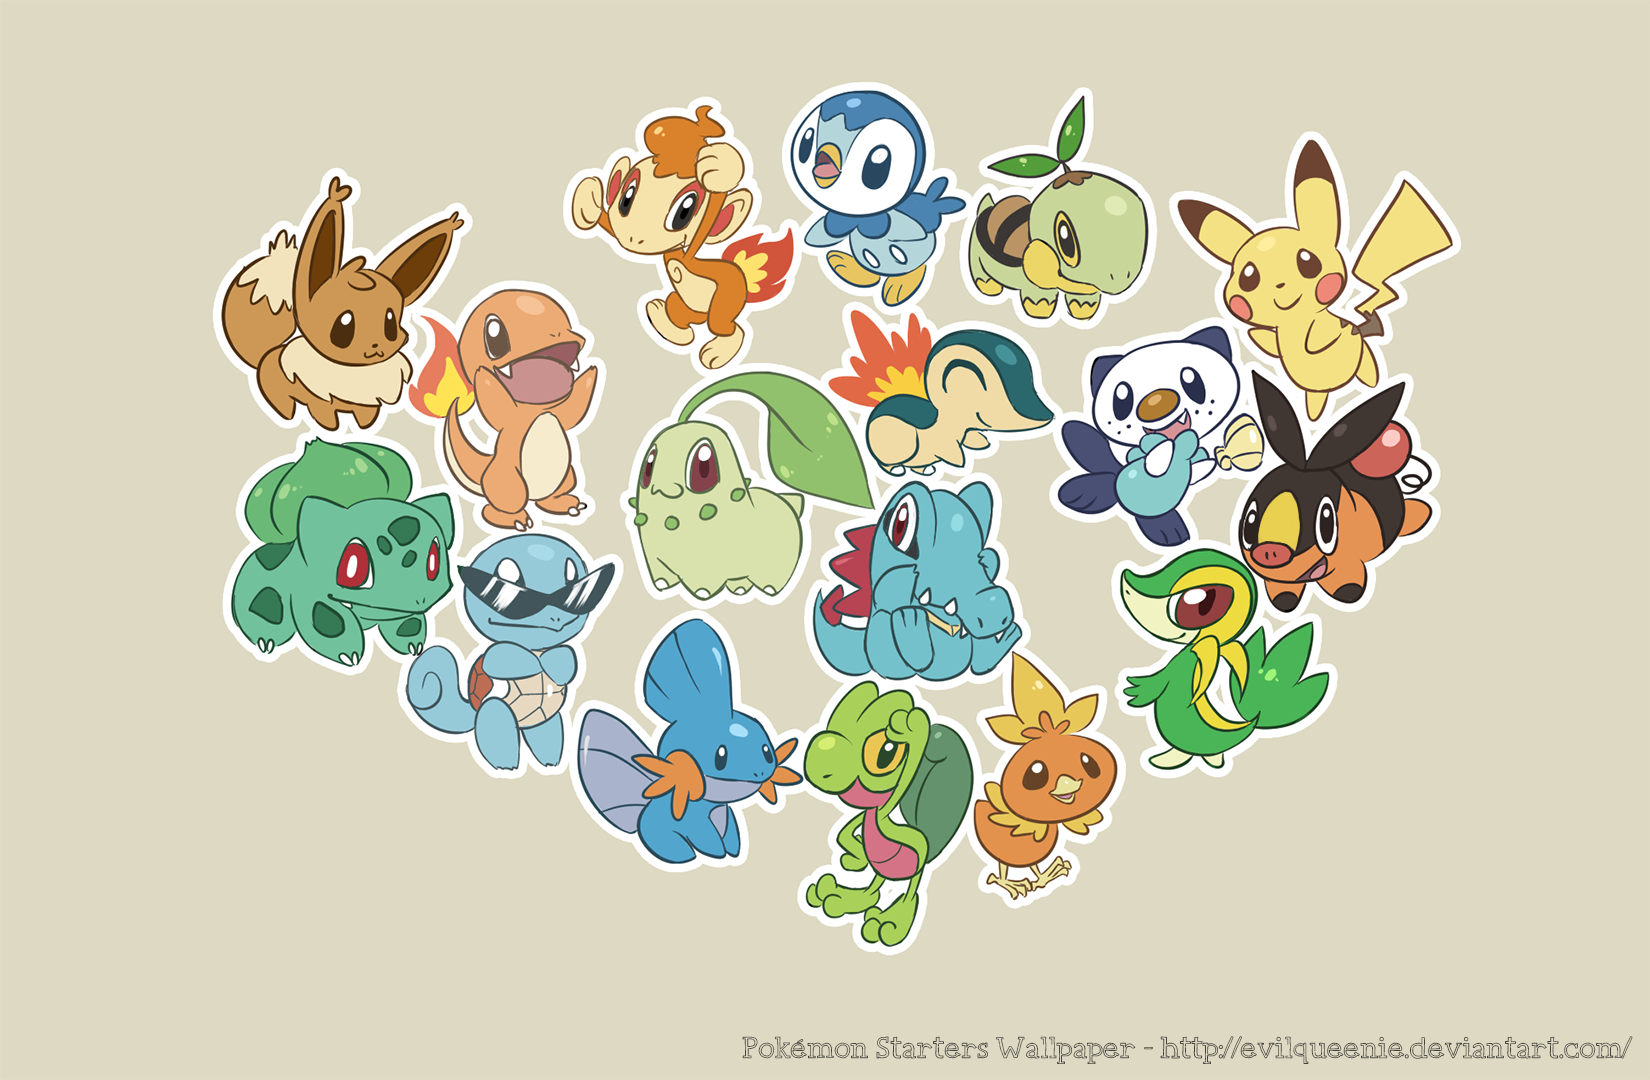 Pokemon Starters Wallpaper by EvilQueenie on DeviantArt